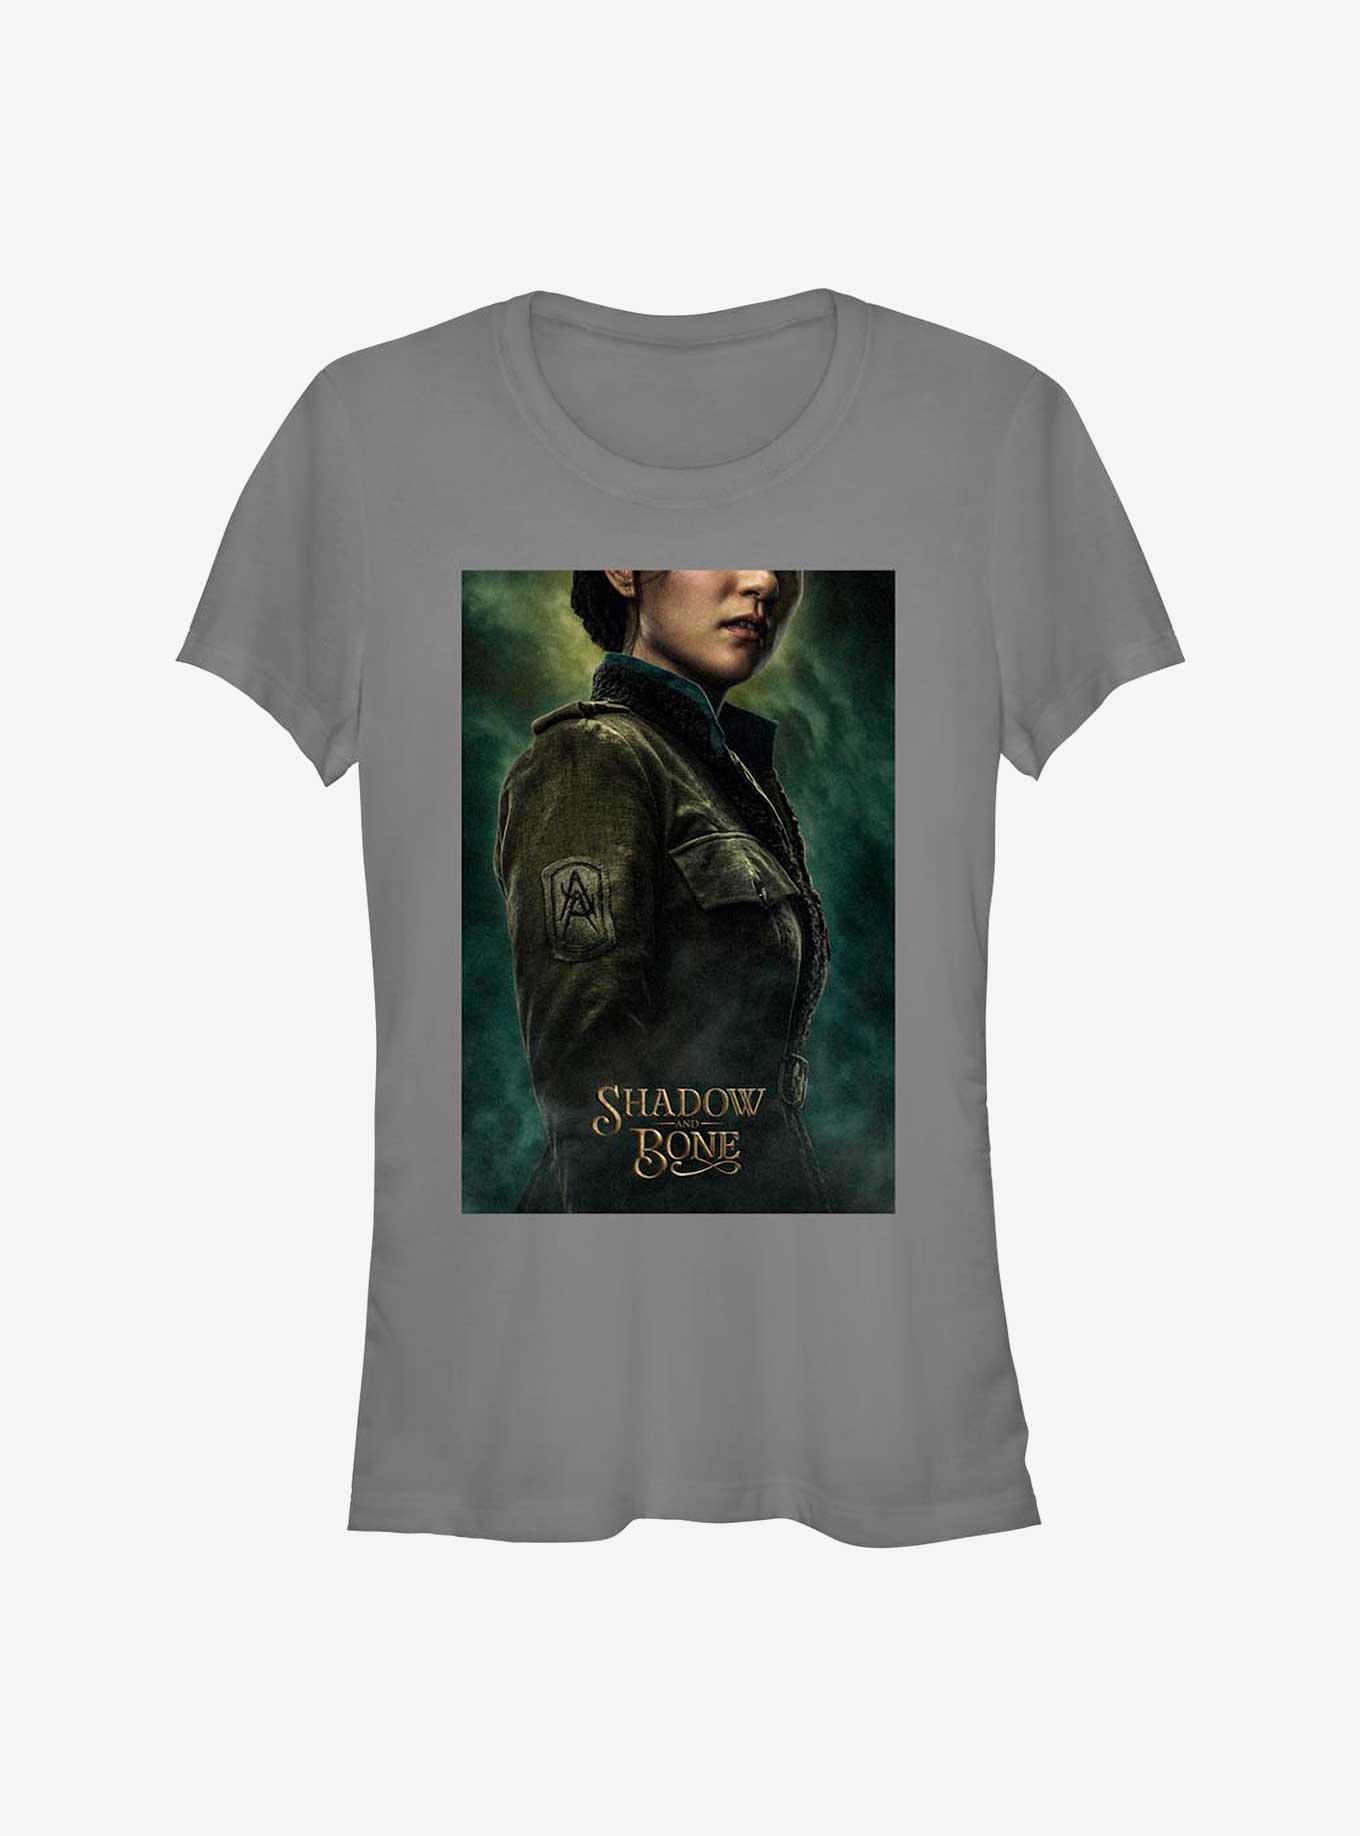 Shadow and Bone Alina Starkov Poster Girls T-Shirt, CHARCOAL, hi-res